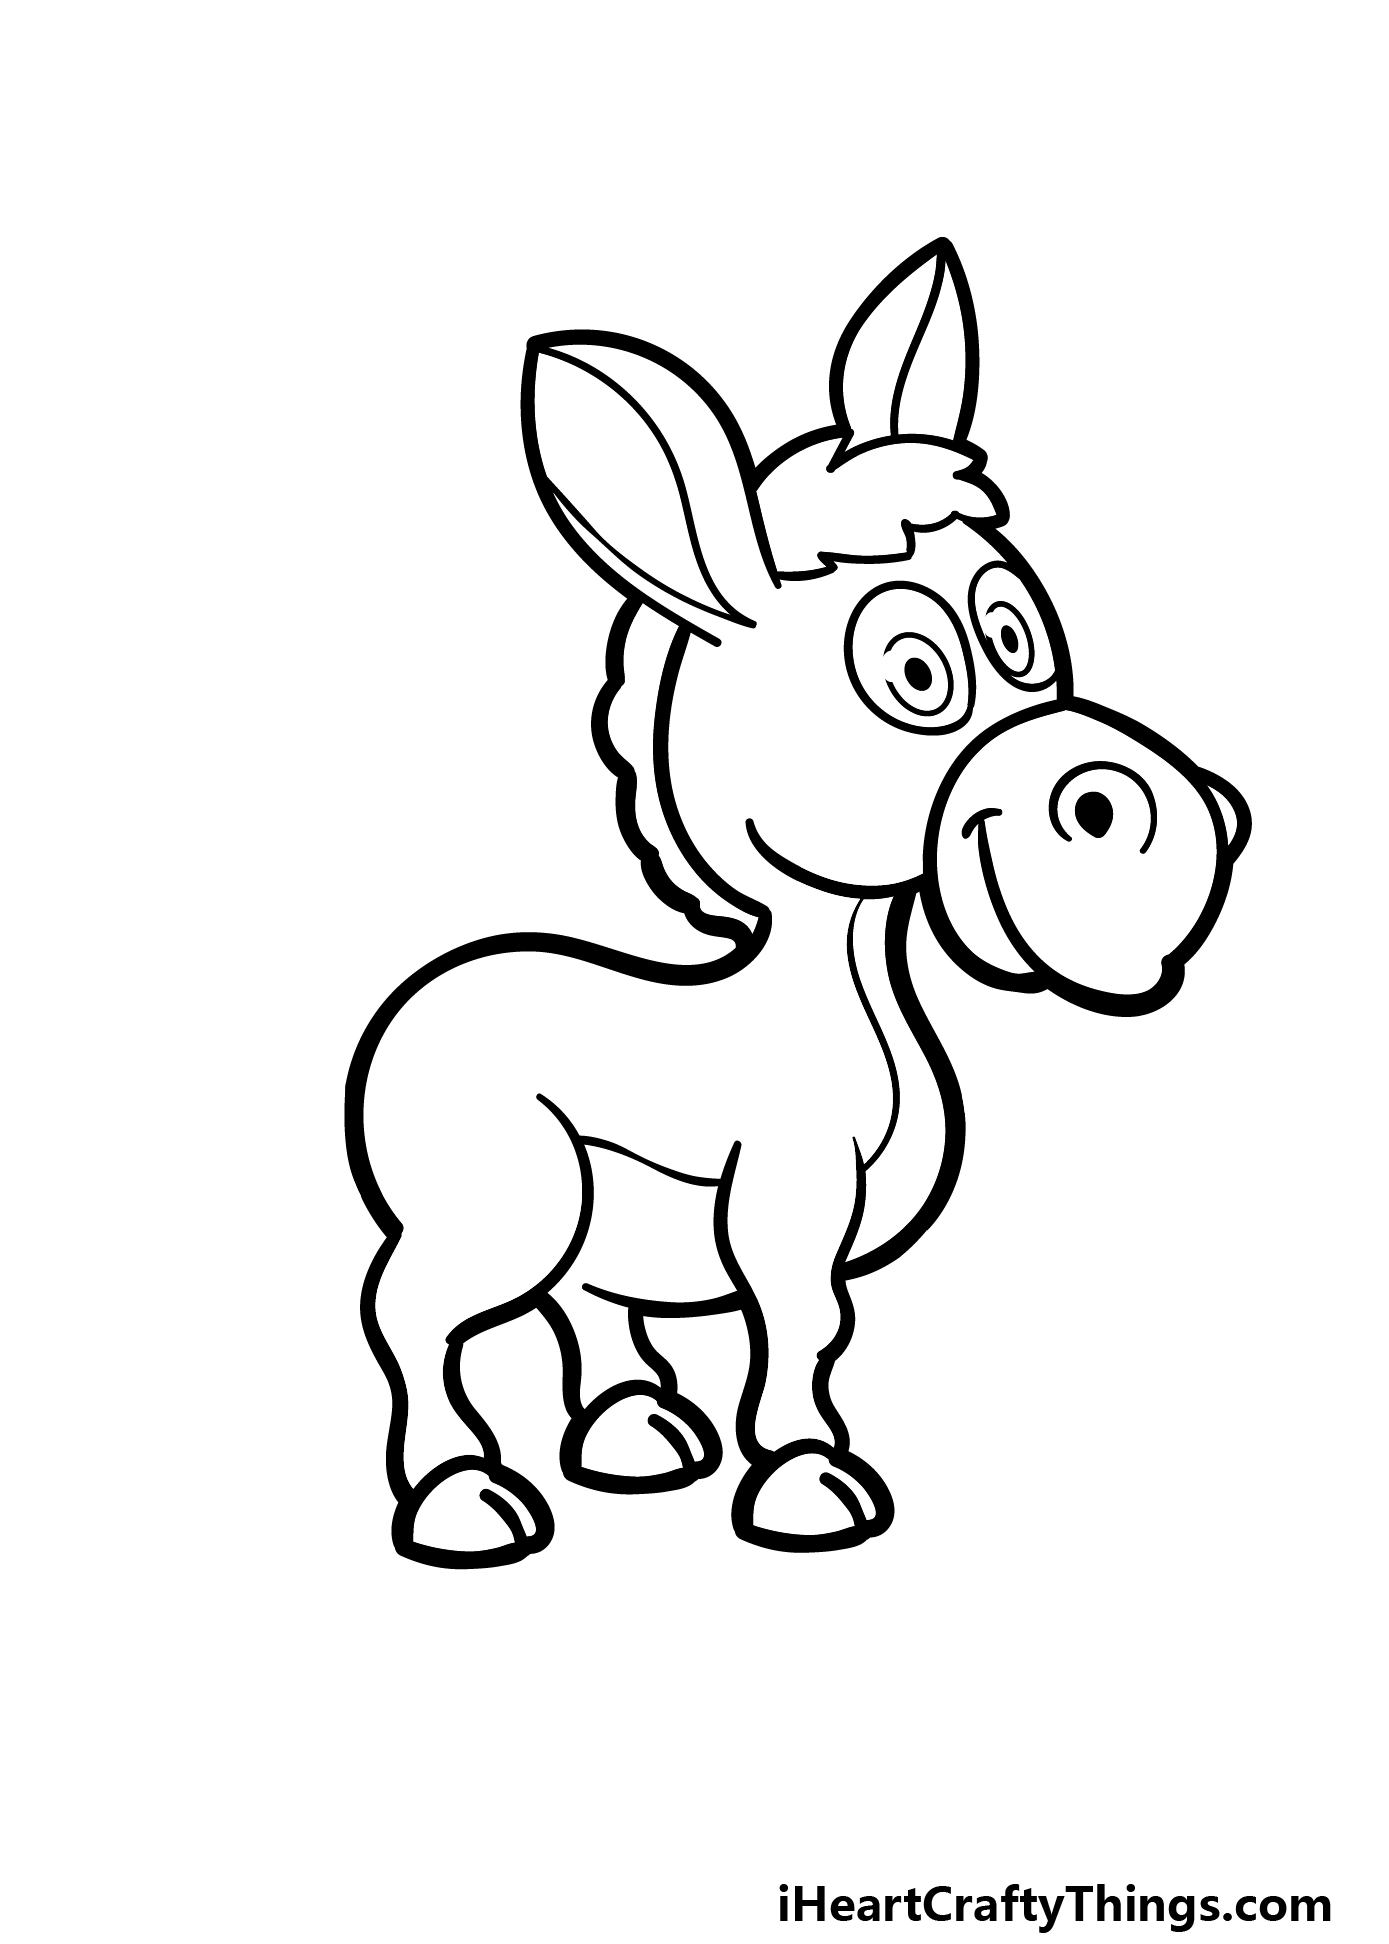 how to draw a cartoon donkey step 5